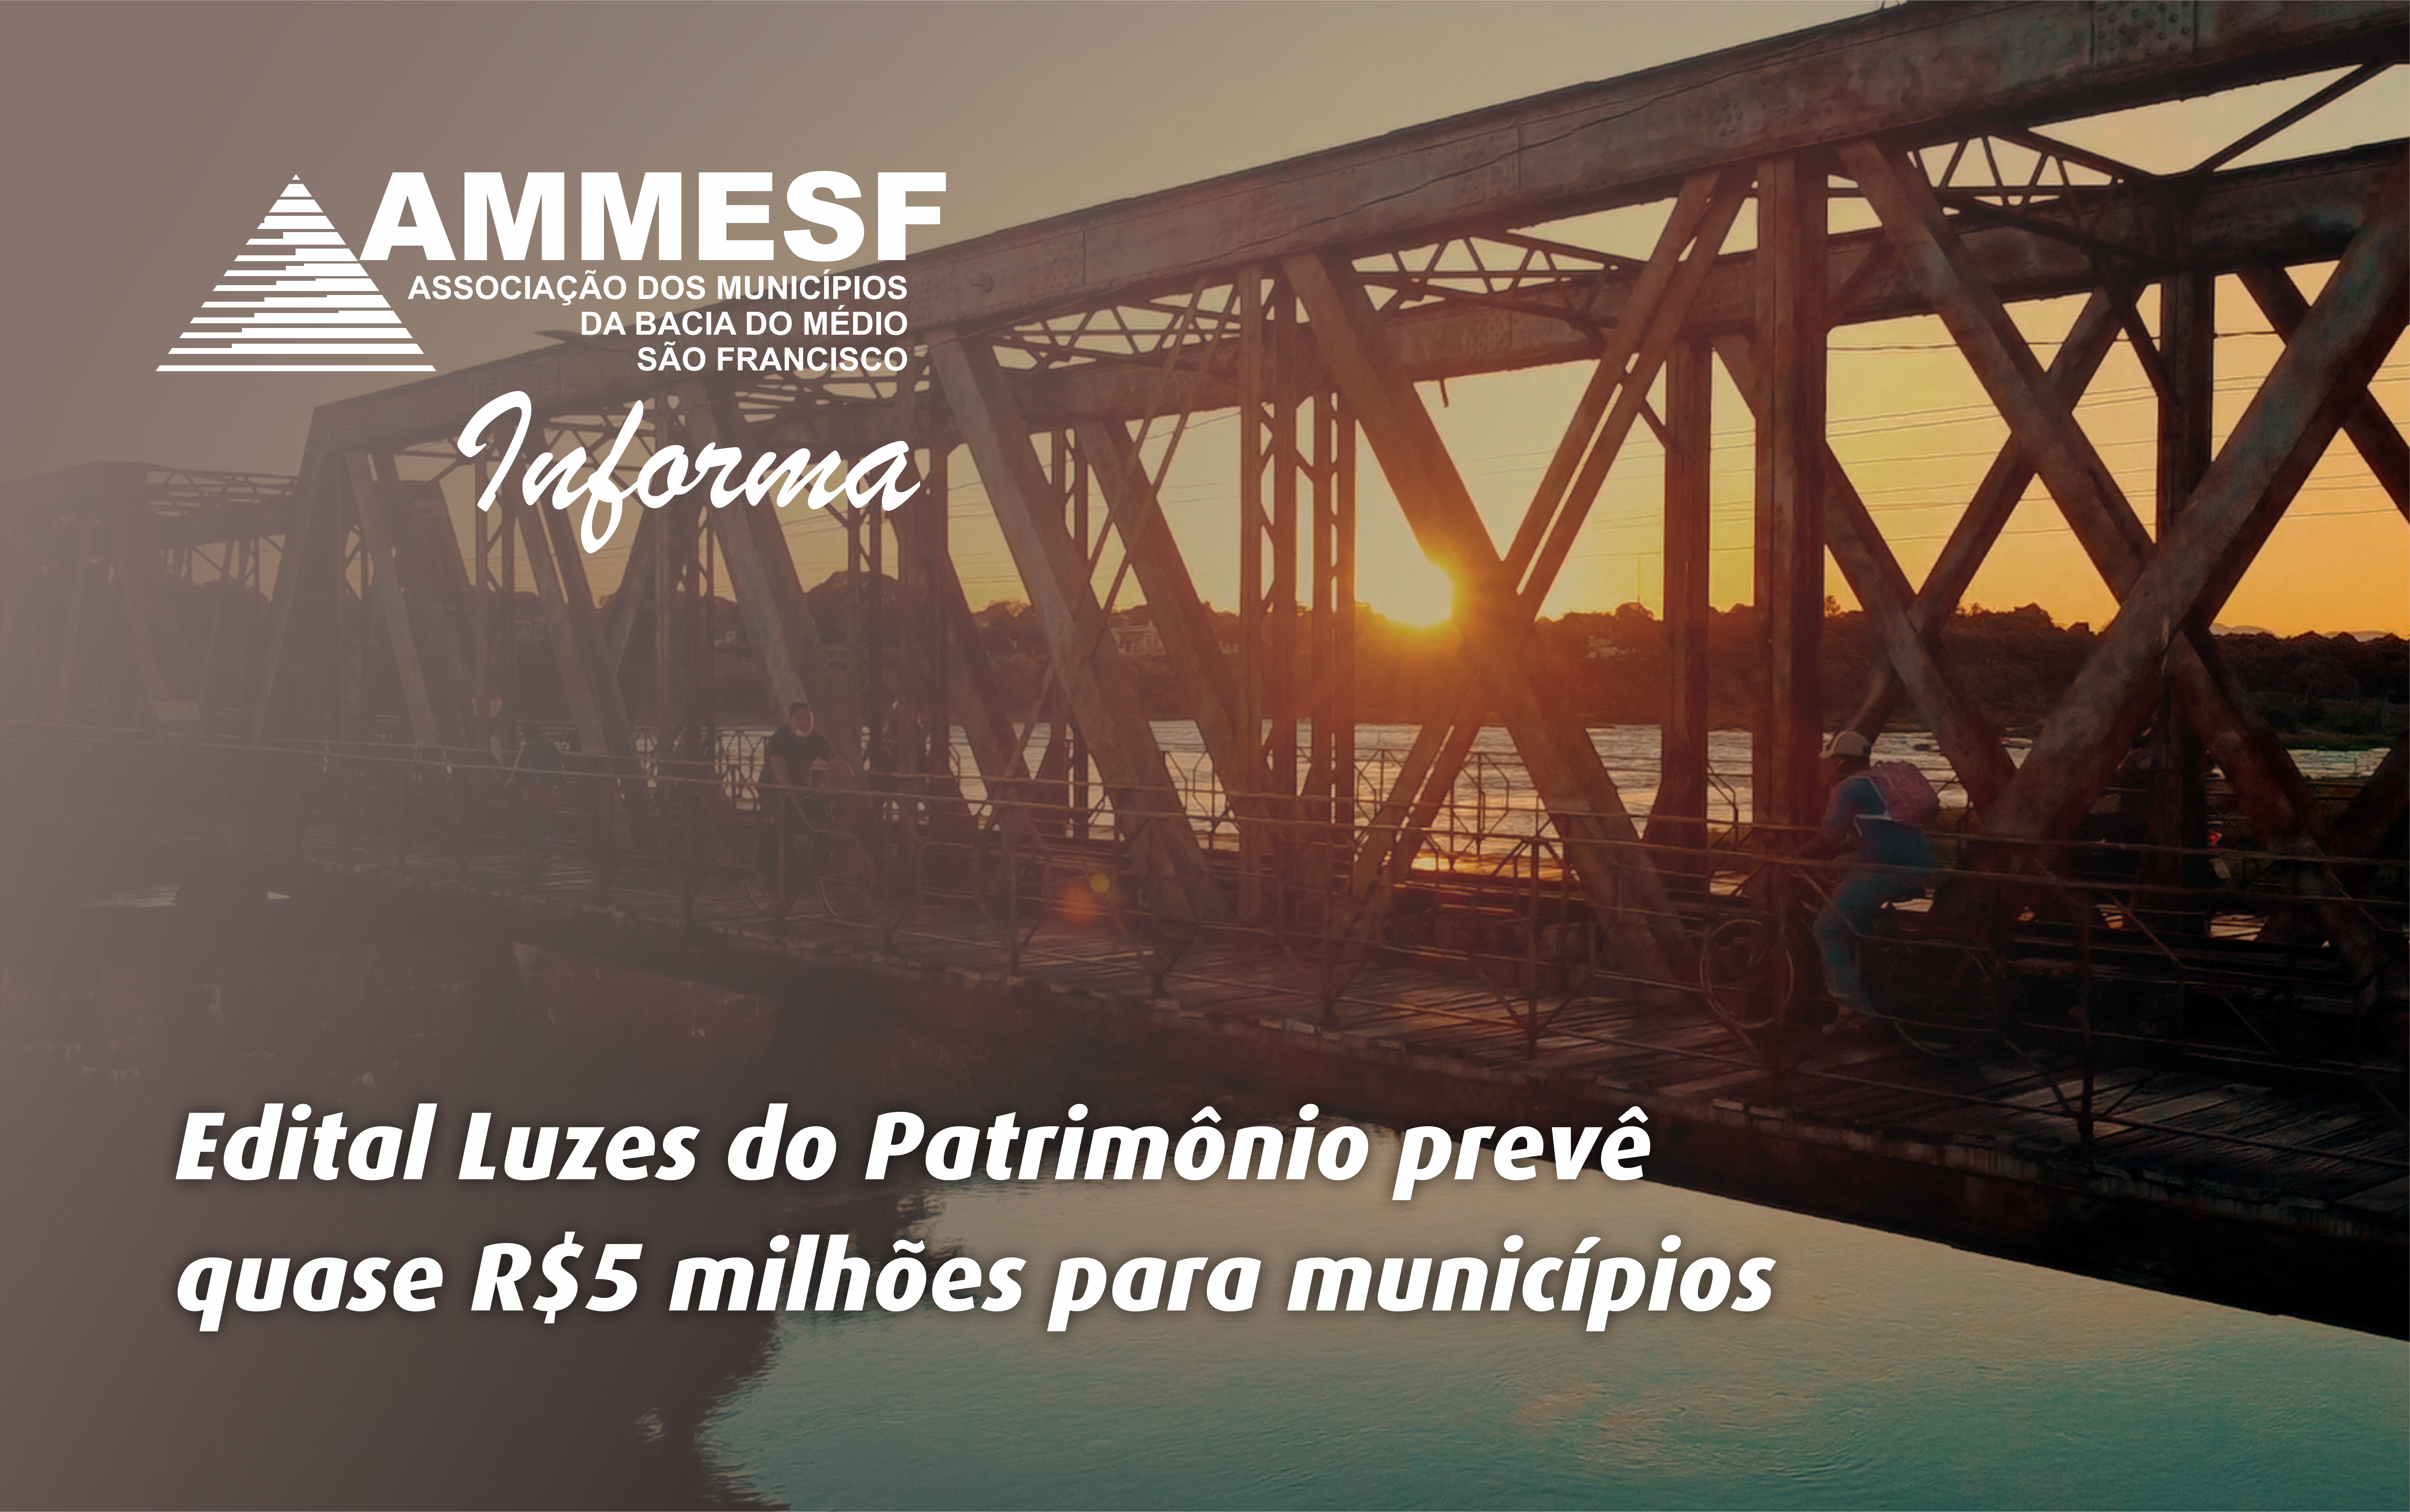 AMMESF informa: Aberto o “Edital Luzes no Patrimônio” que destinará quase R$ 5 MILHÕES para os municípios